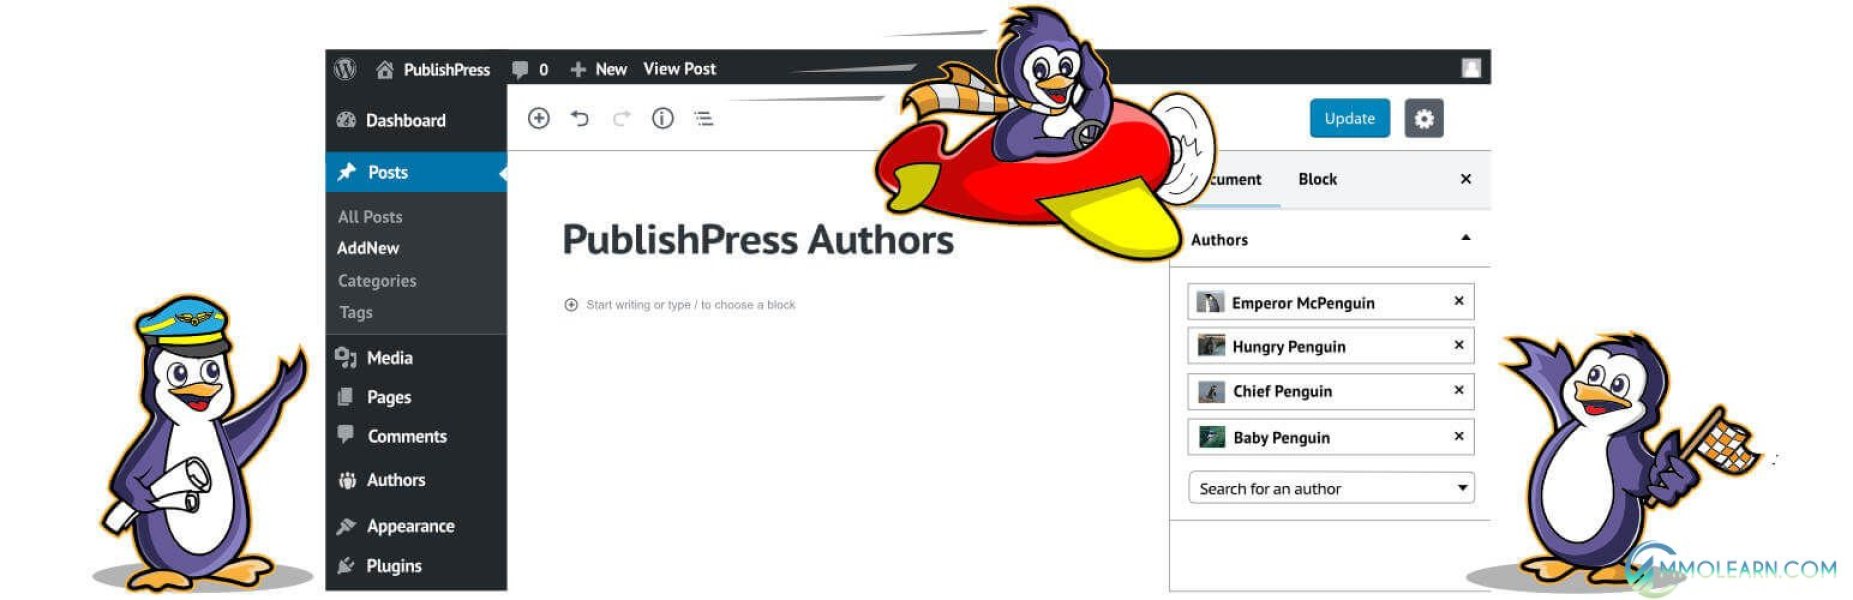 PublishPress Authors Pro